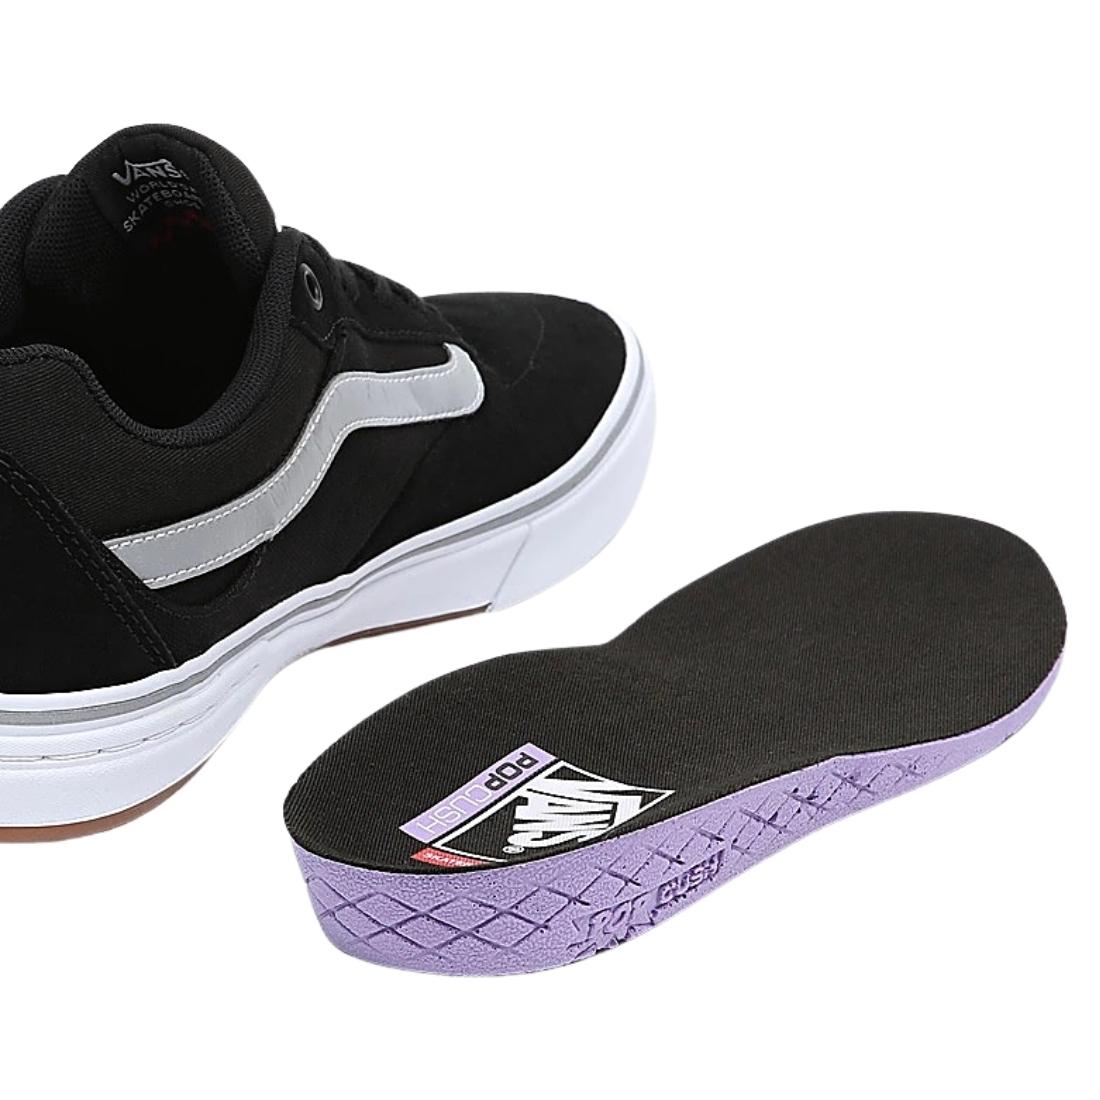 Vans Kyle Walker Pro Skate Shoes - Black Reflective - Mens Skate Shoes by Vans